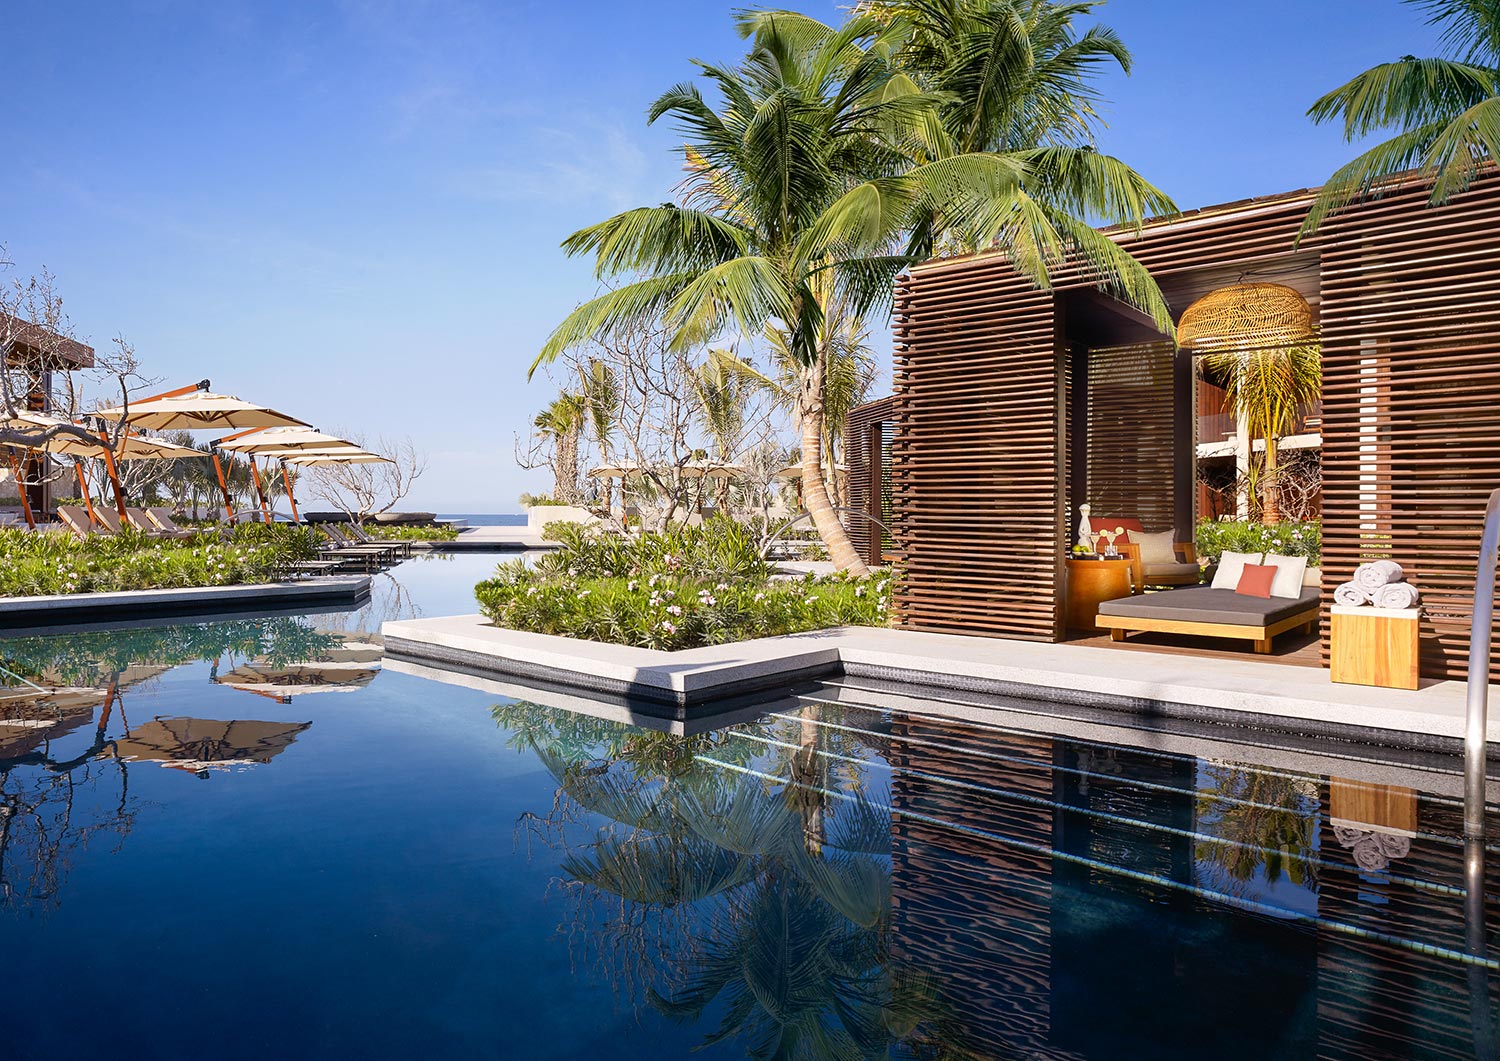 Nobu Hotel Los Cabos incluido en Global Luxury Travel Group Virtuoso®